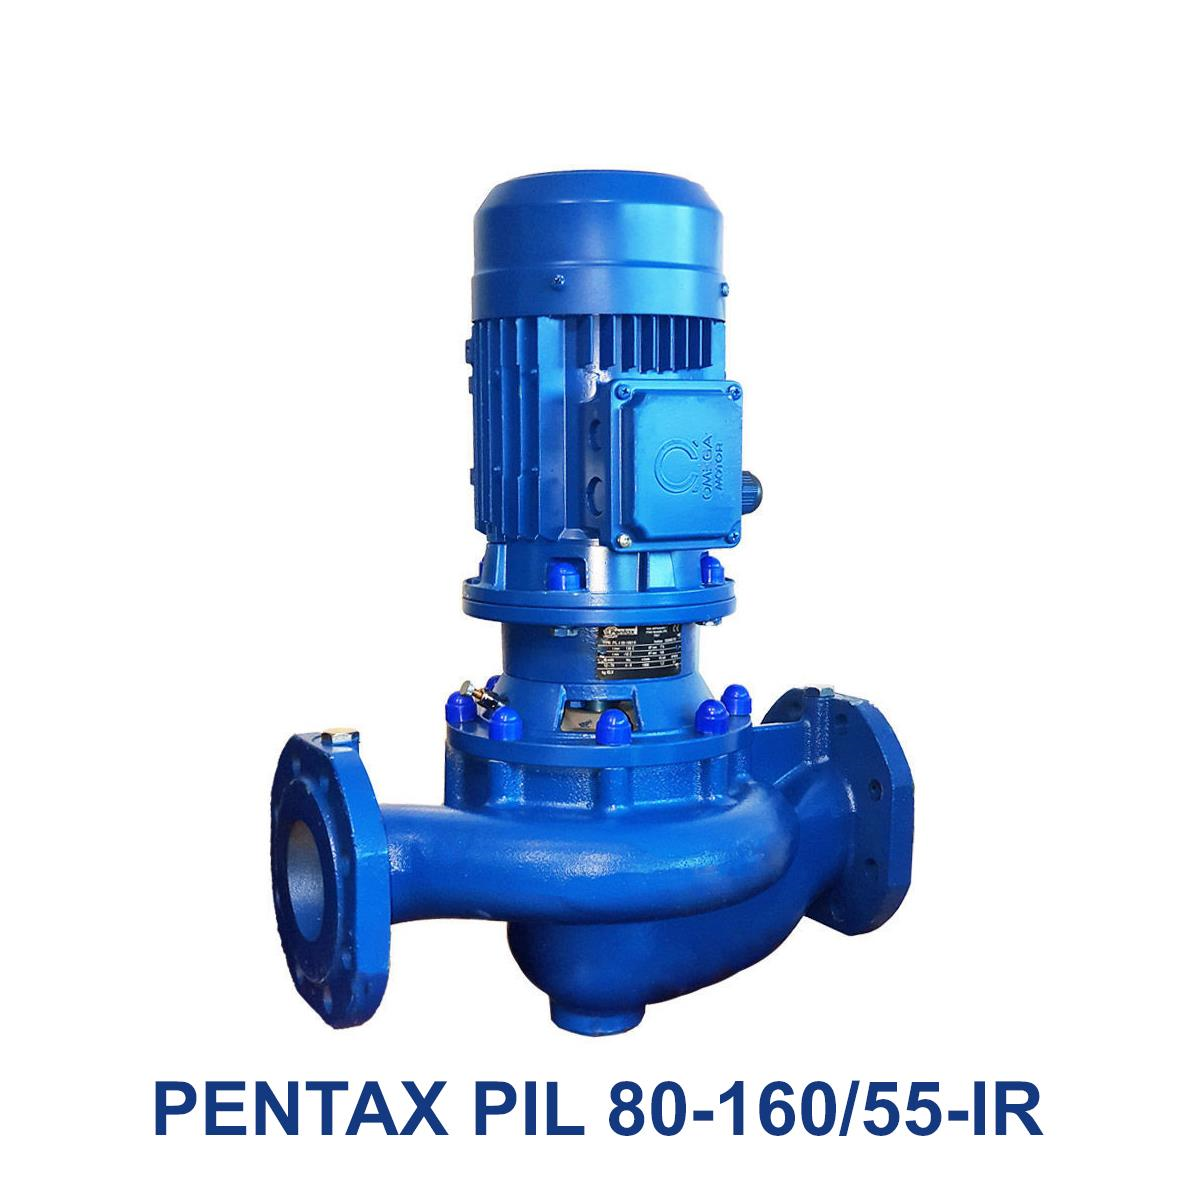 PENTAX-PIL-80-160-55-IR